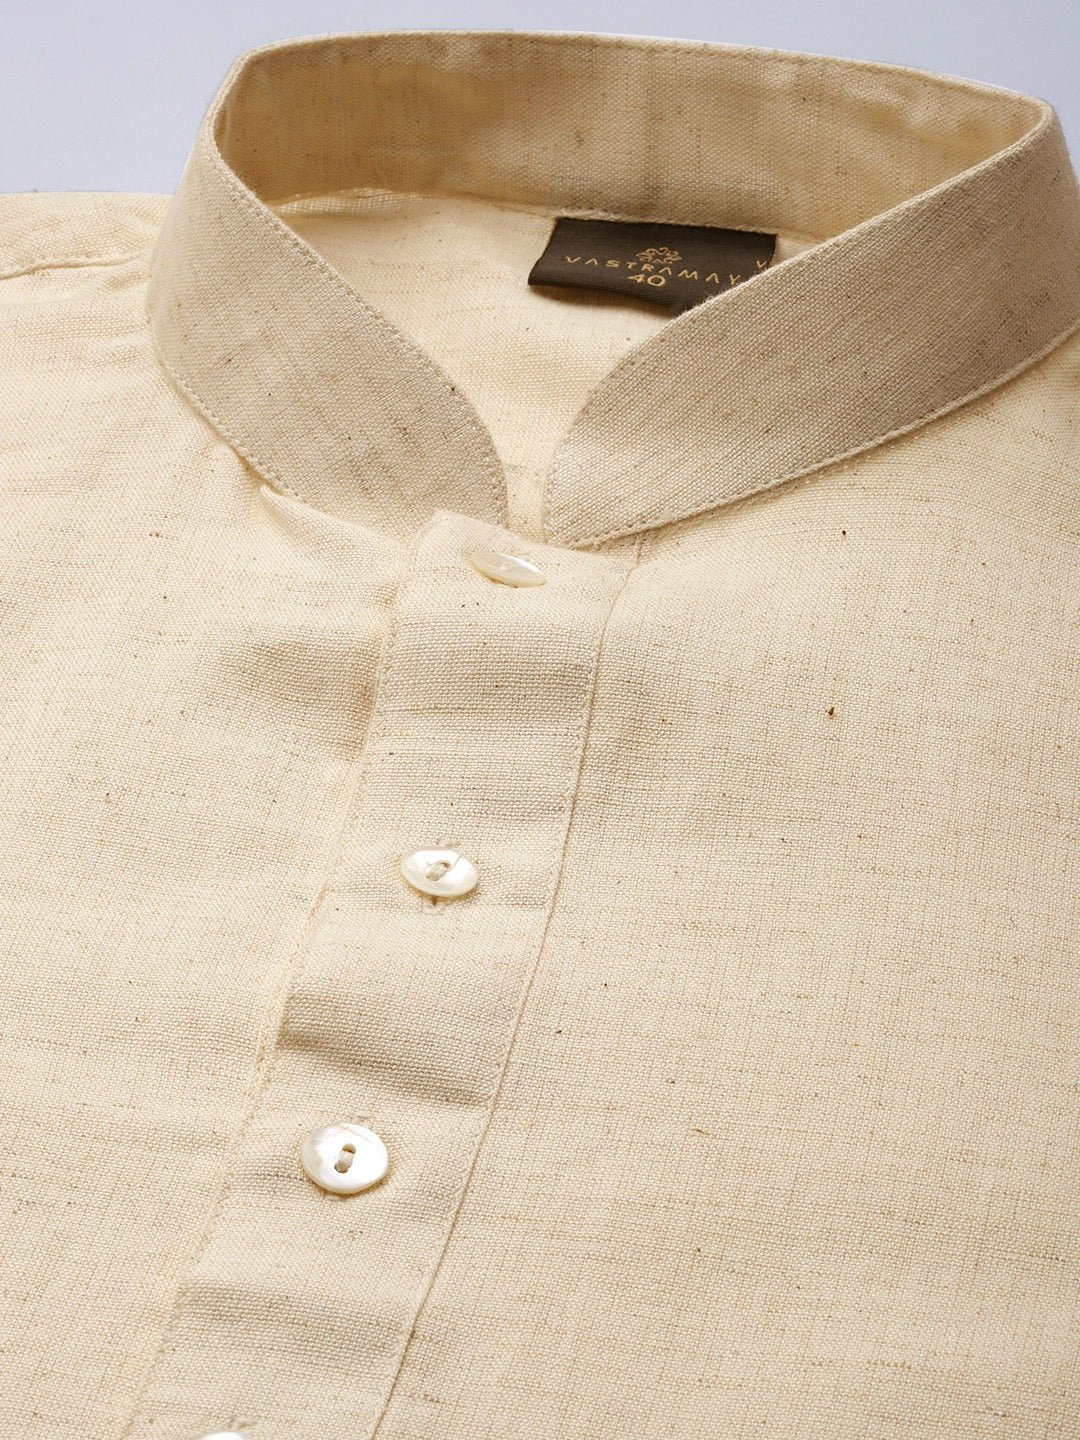 Vastramay Men's Cream And White Cotton Short Kurta And Mundu - Distacart